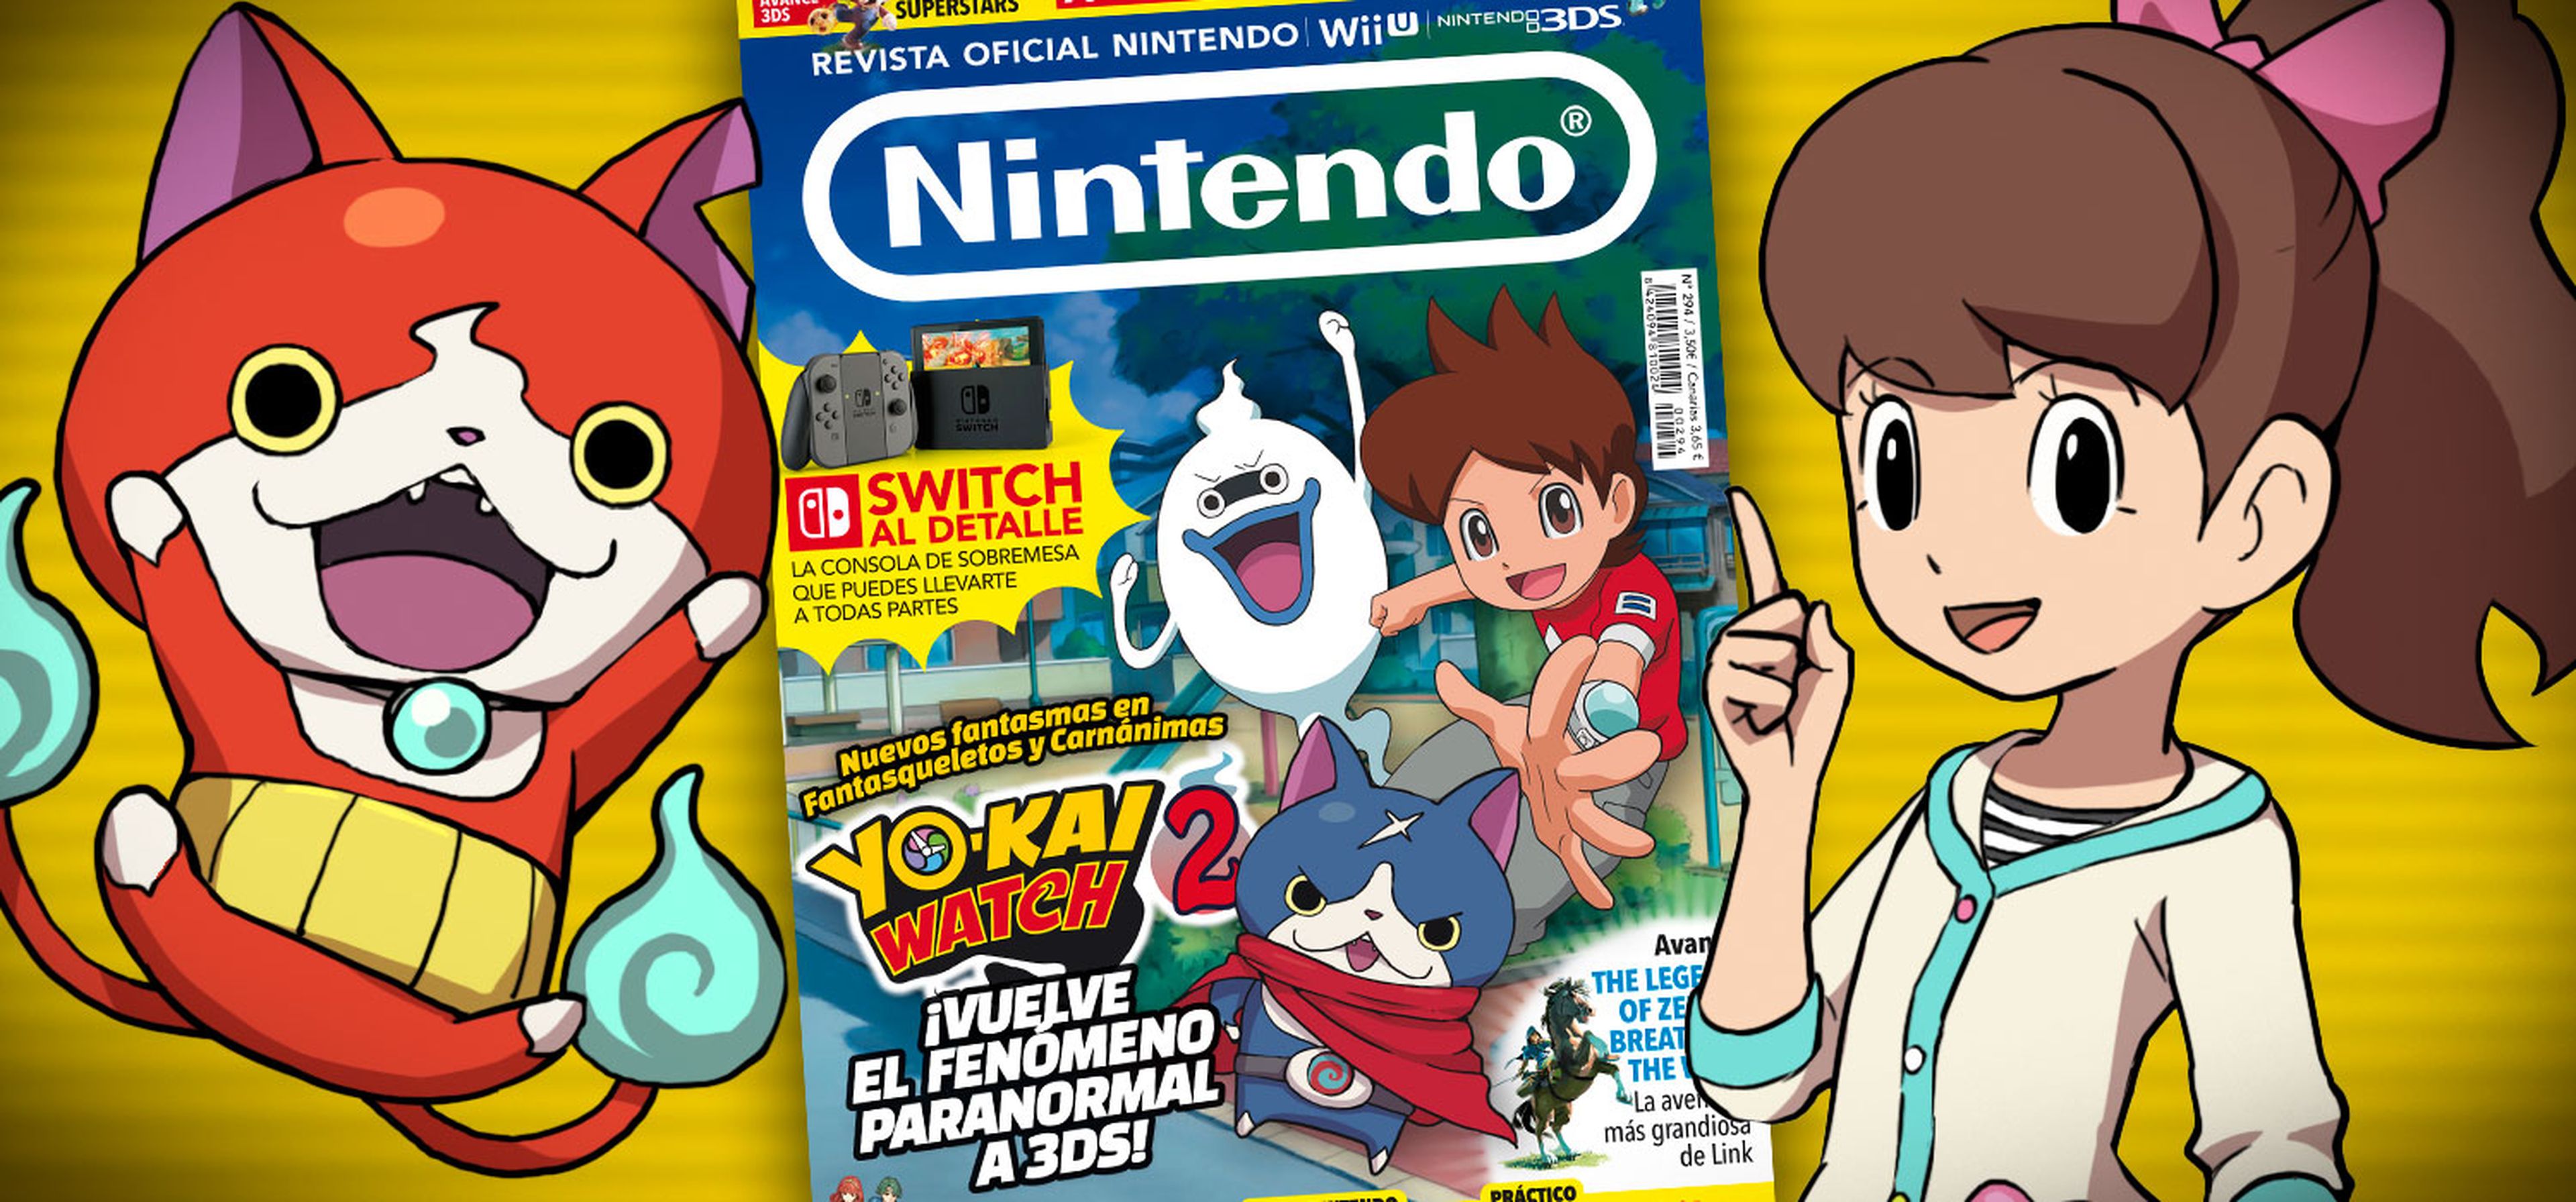 Portada Revista Oficial Nintendo 294